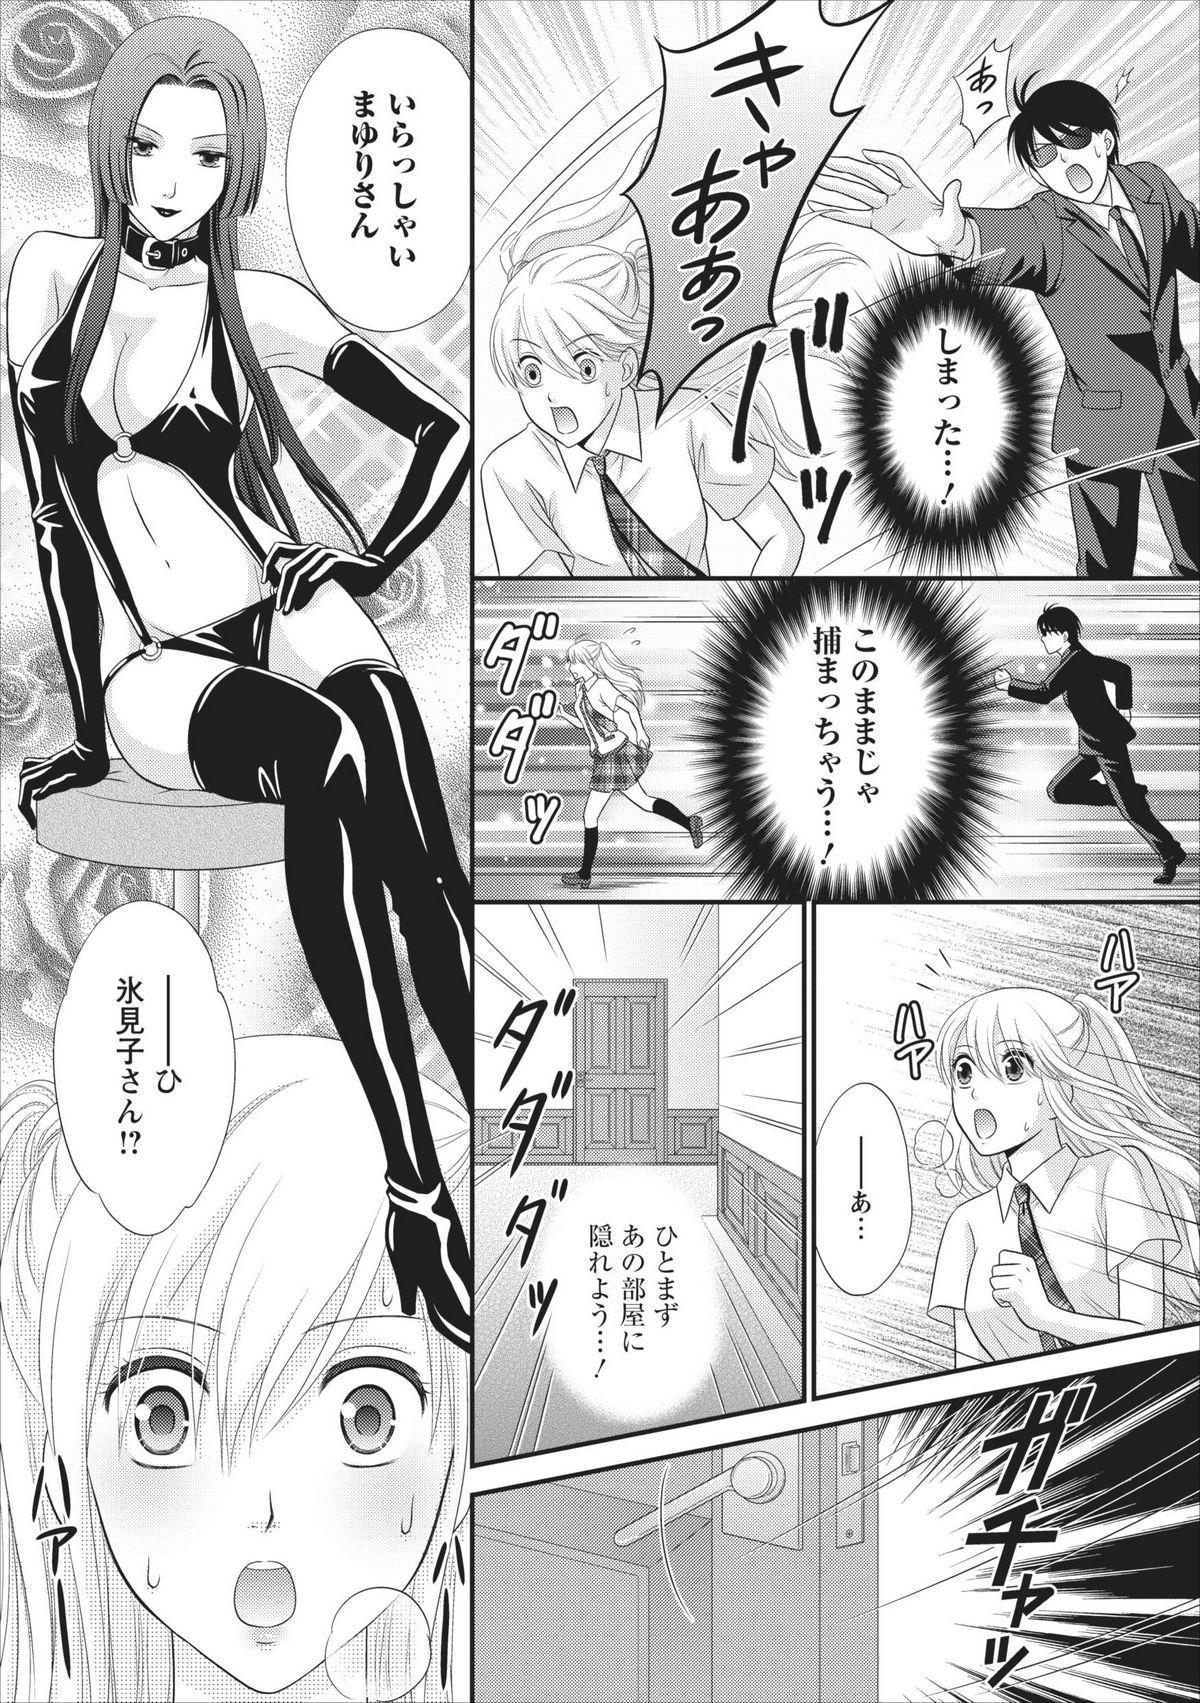 Asshole Himitsu Club Himiko - Inwai Kan no Joou ch.2 Teenfuns - Page 12